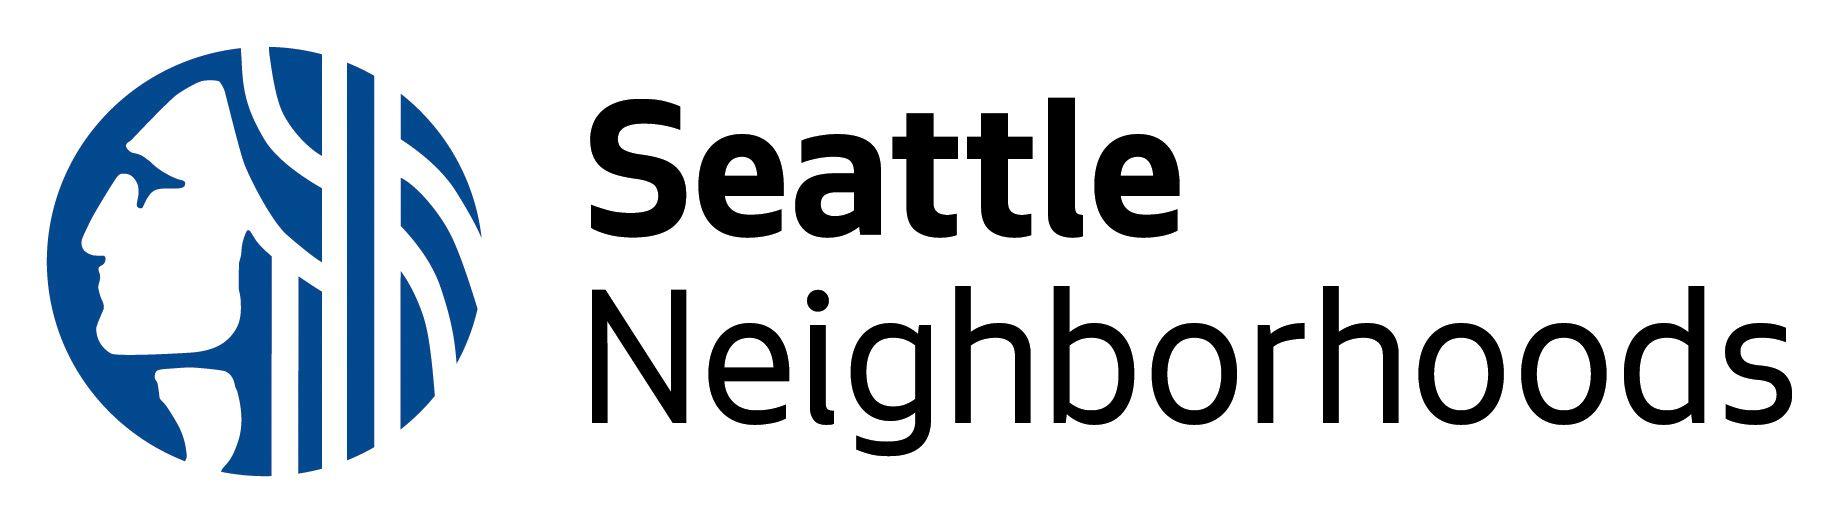 Neighborhood Logo - About Us - Neighborhoods | seattle.gov